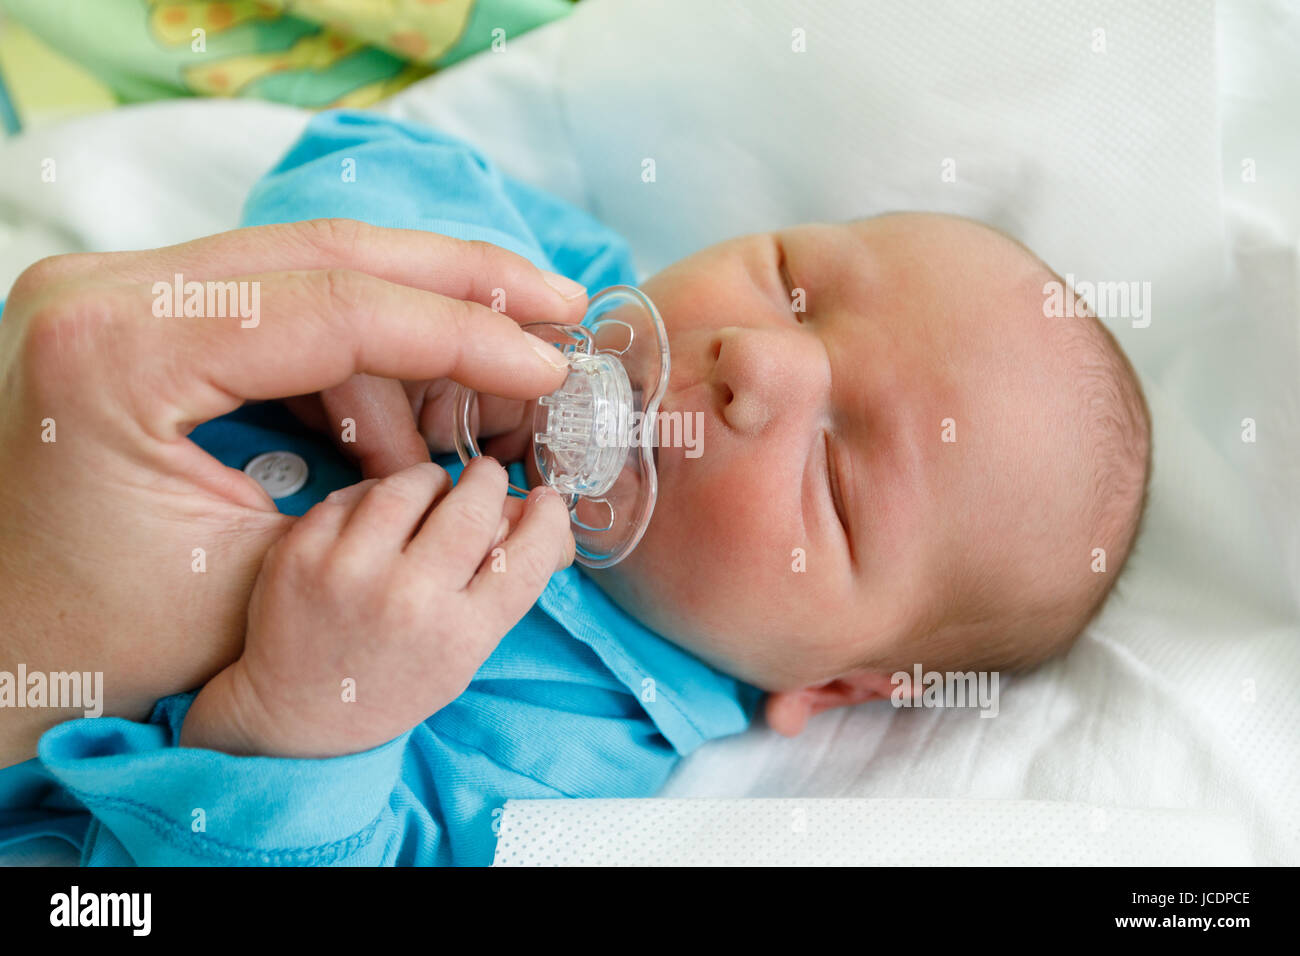 Bébé nouveau-né bébé dans l'hôpital, les premières heures de la vie nouvelle, un jours après la naissance Banque D'Images